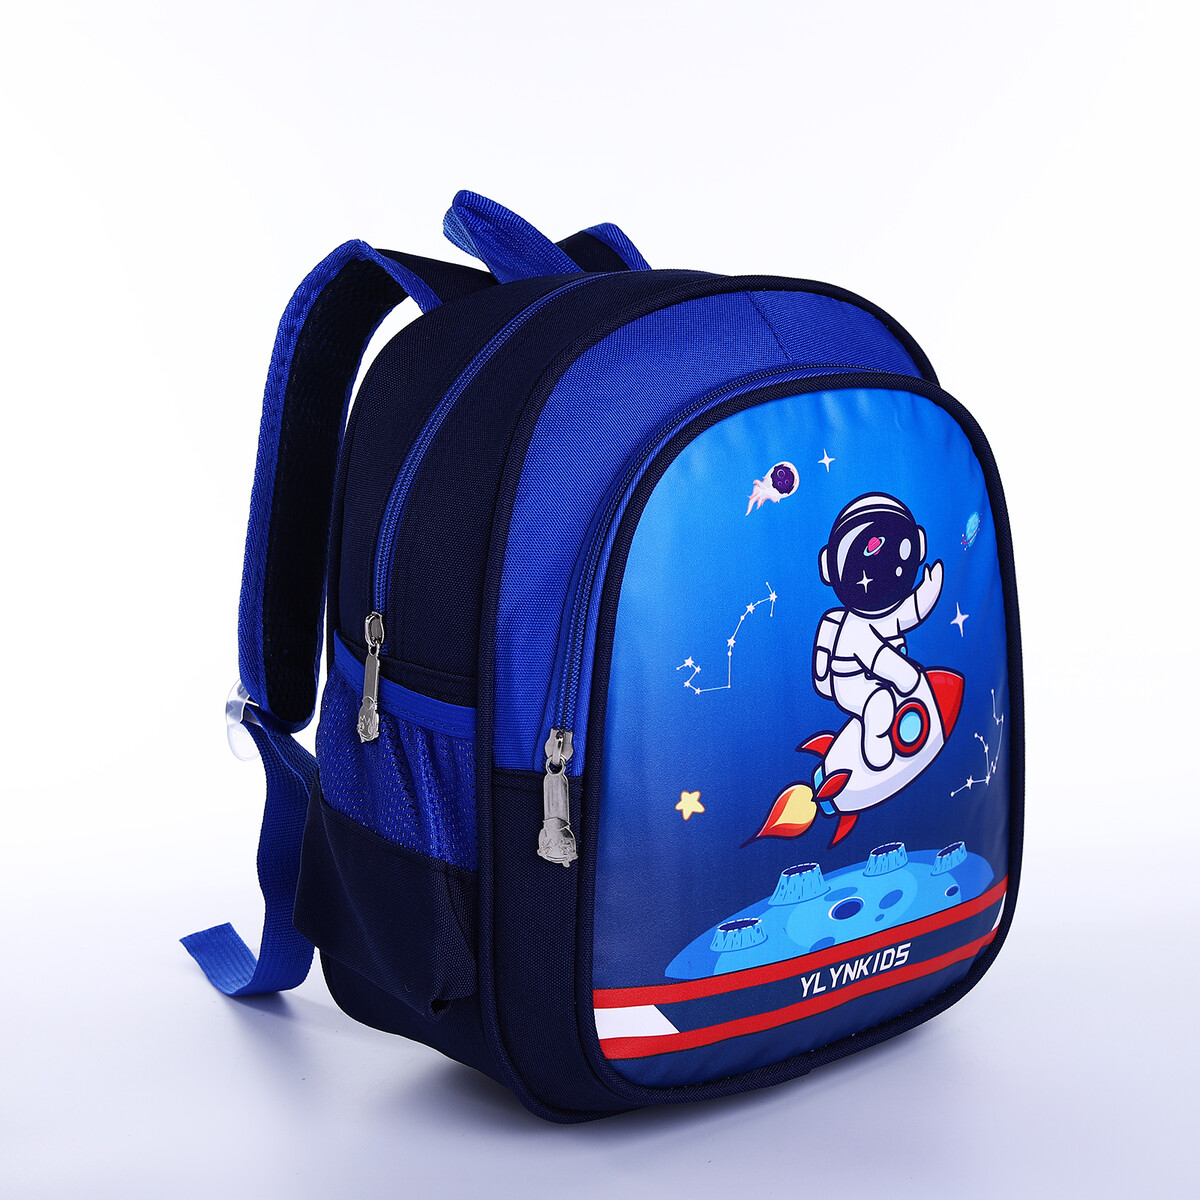 Рюкзак детский на молнии, 3 наружных кармана, цвет синий рюкзак детский на молнии 3 наружных кармана сиреневый